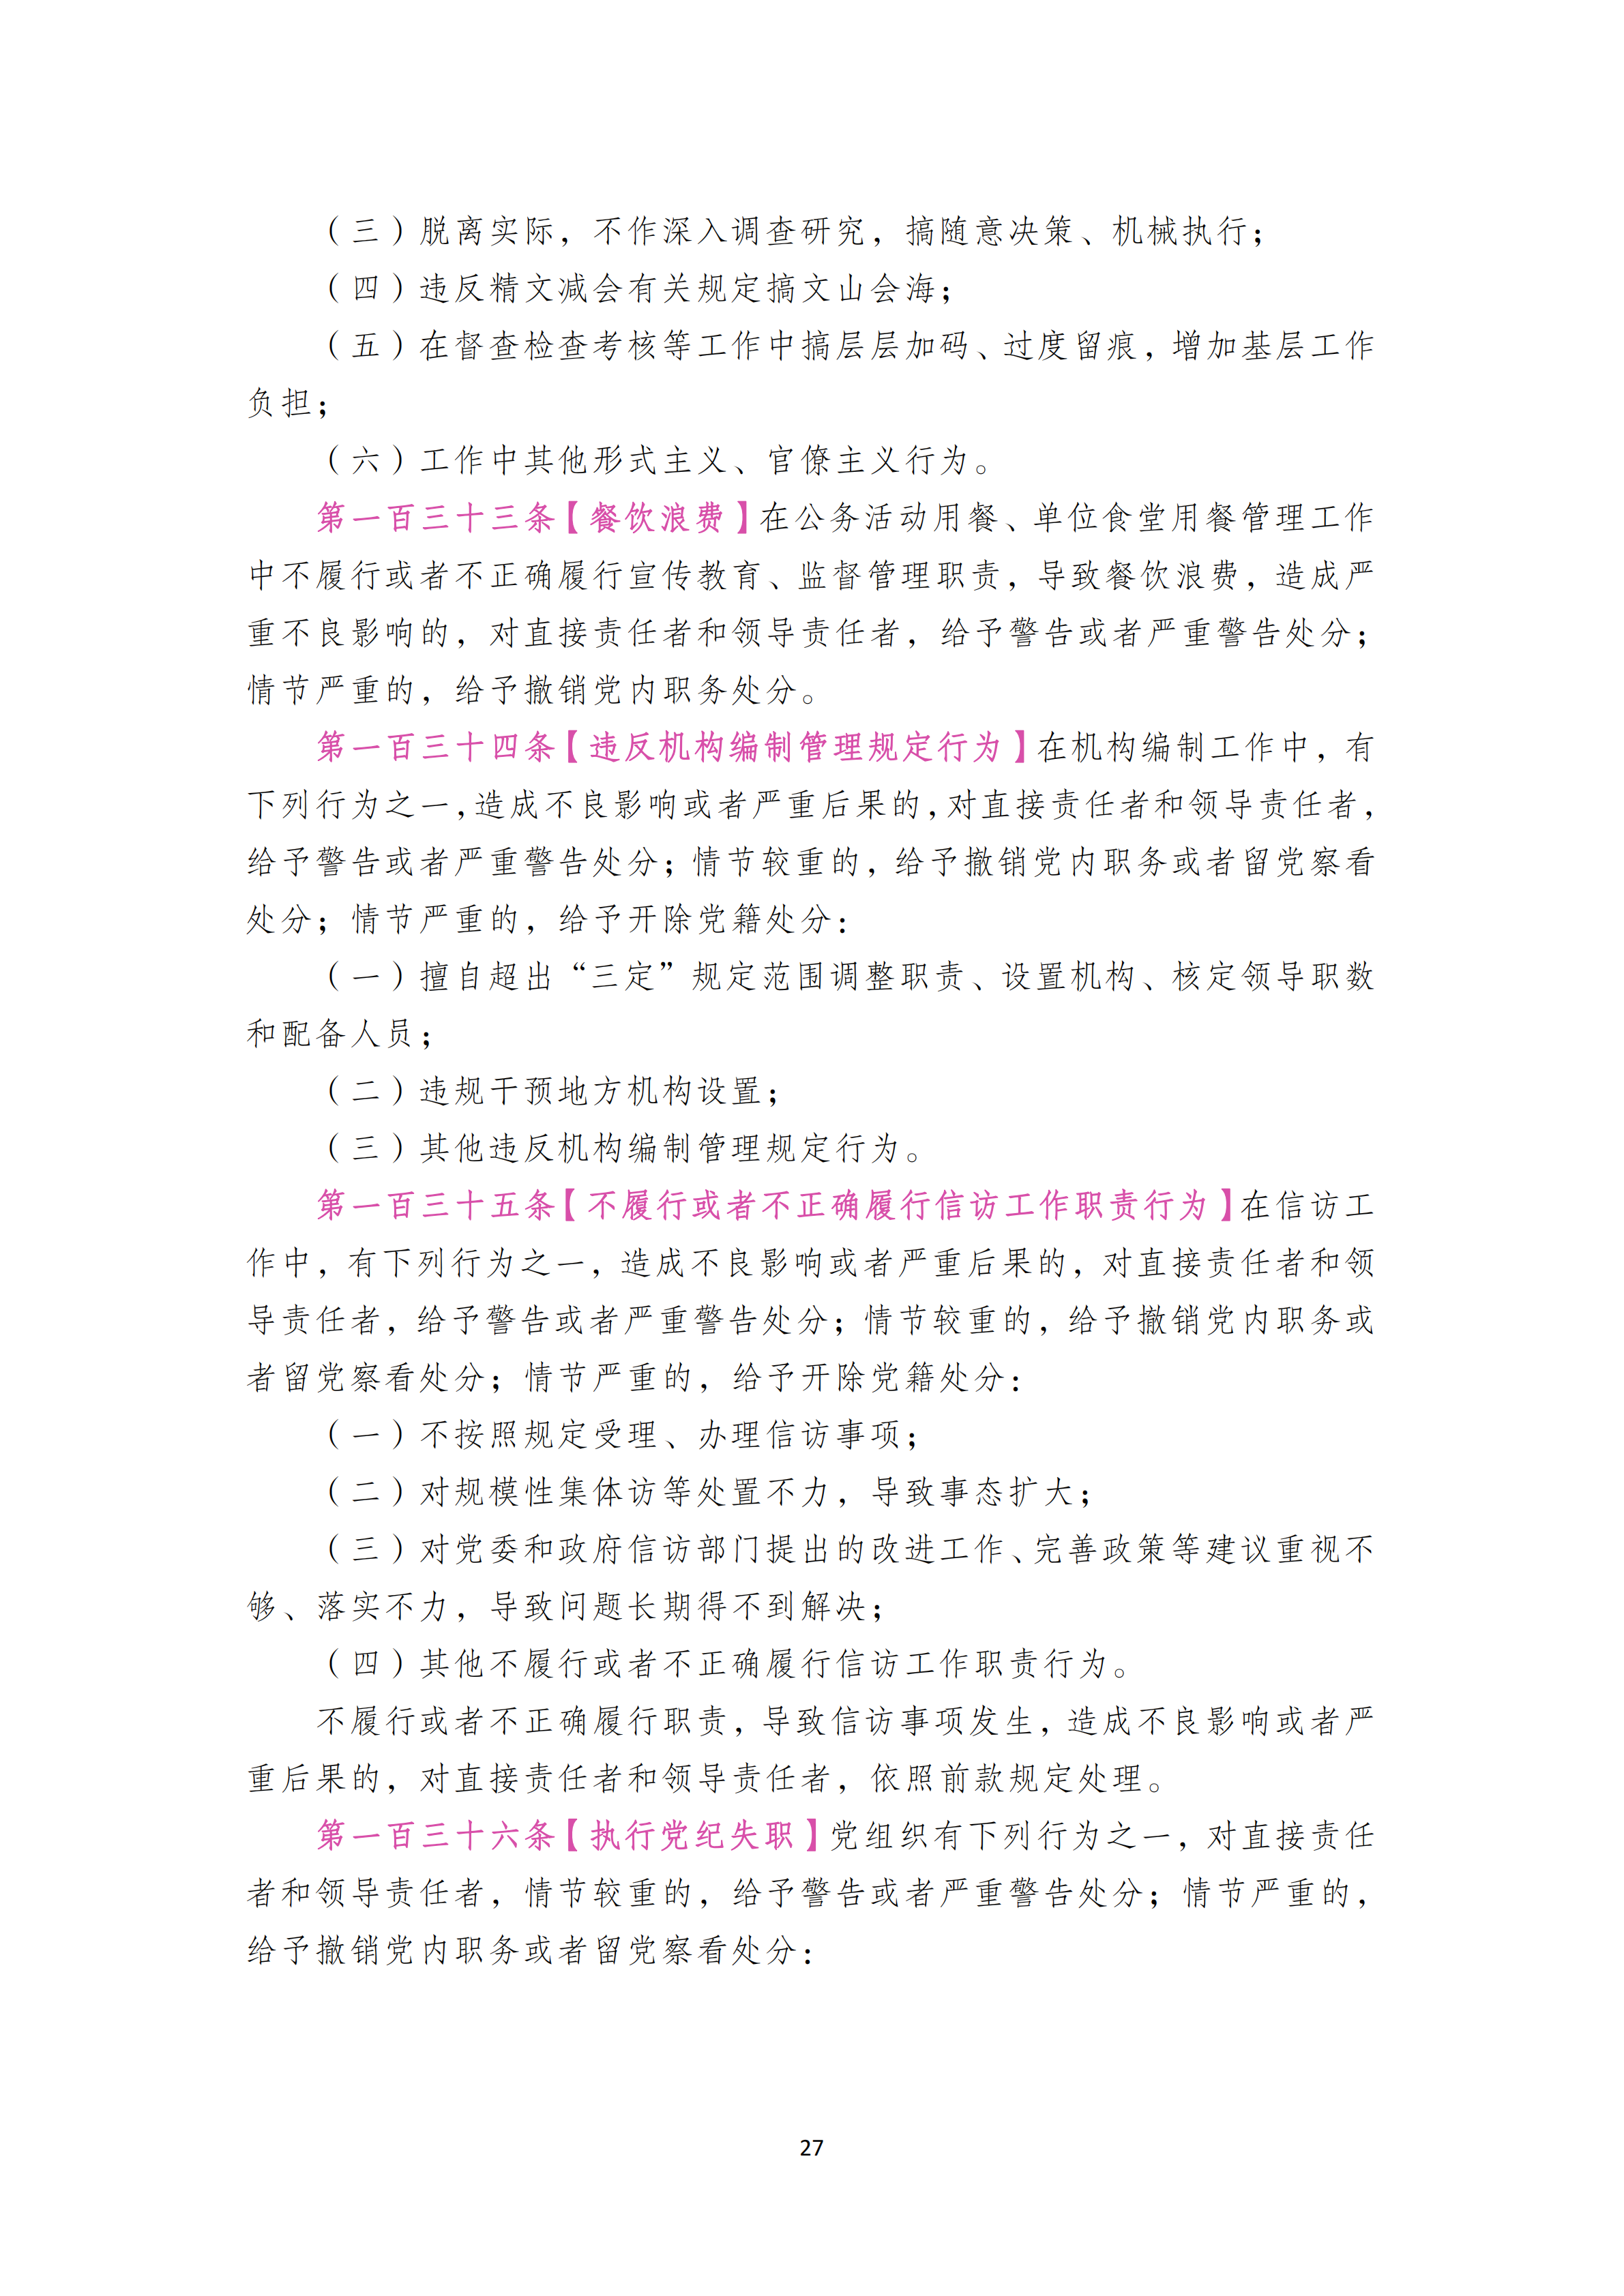 中国共产党纪律处分条例_26.png